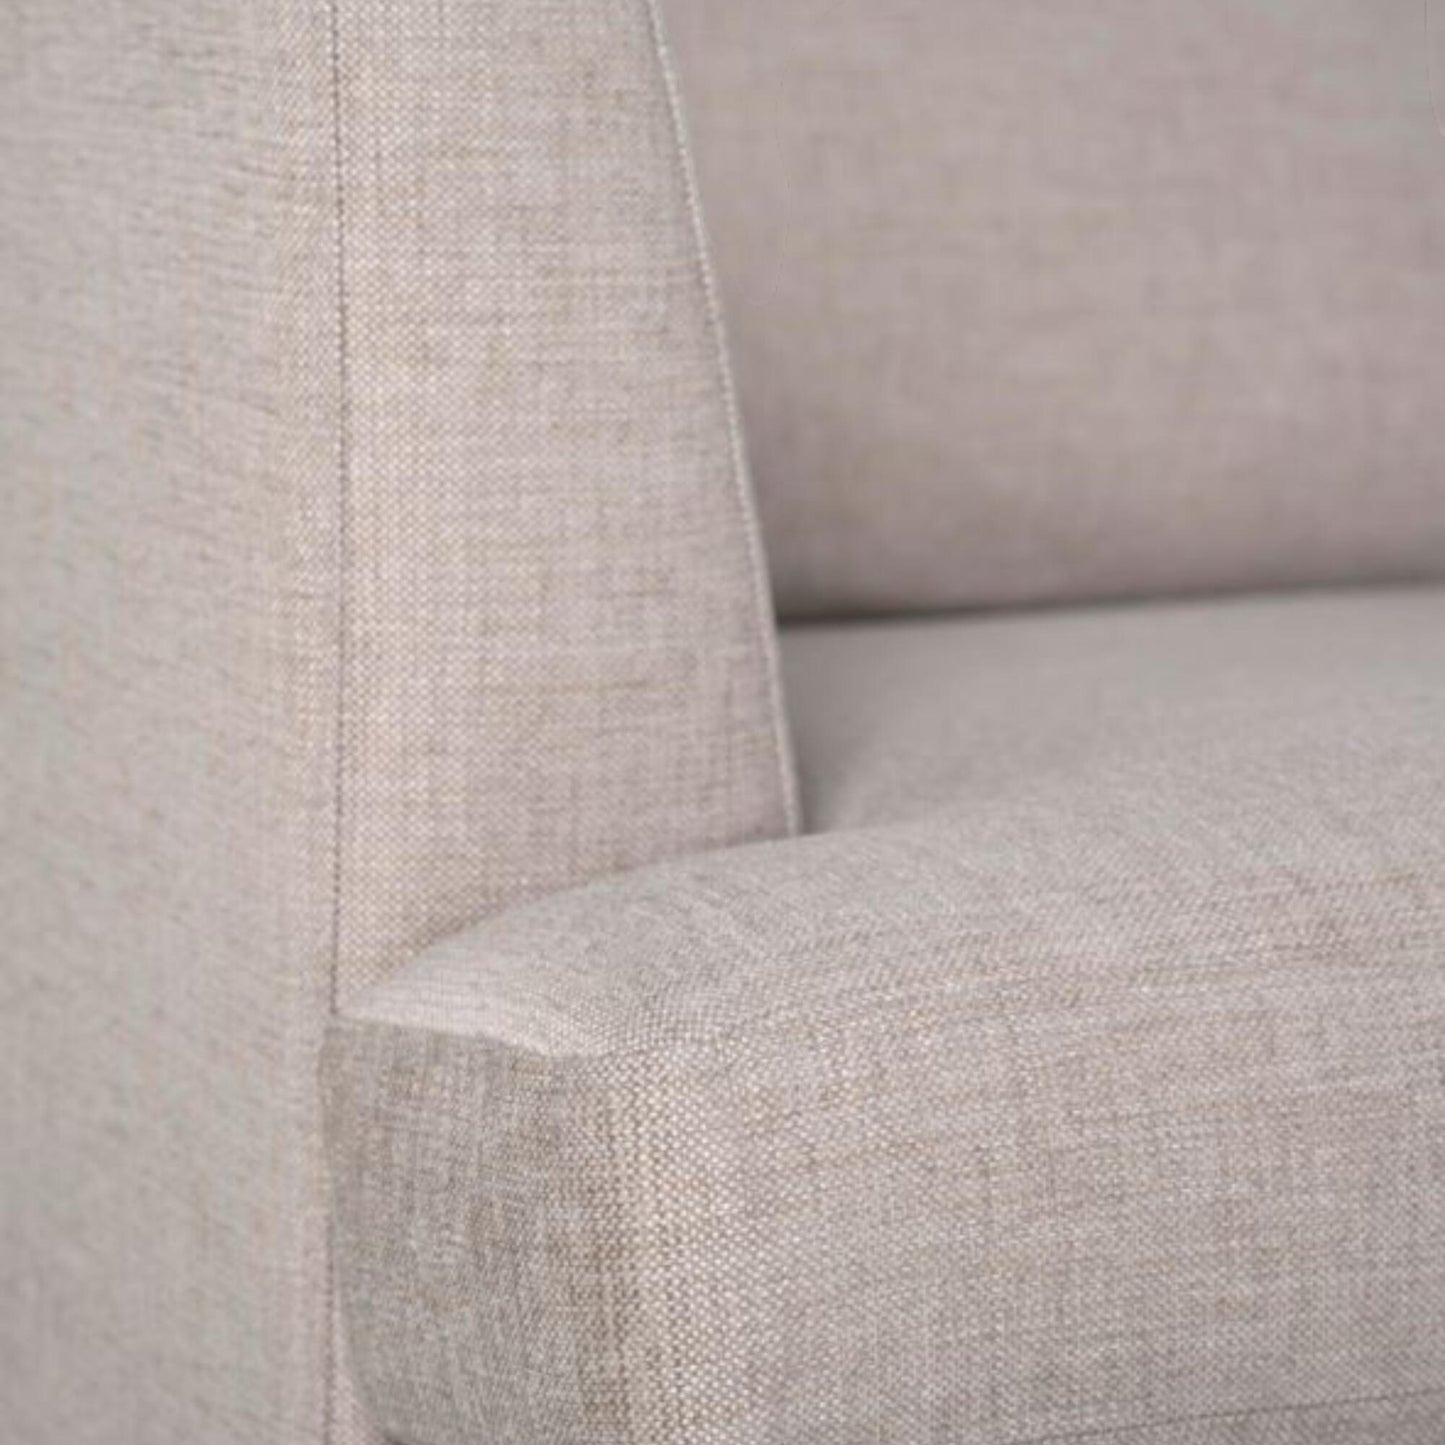 Helt nytt | Ava sofa med sjeselong, Beige fra Kid